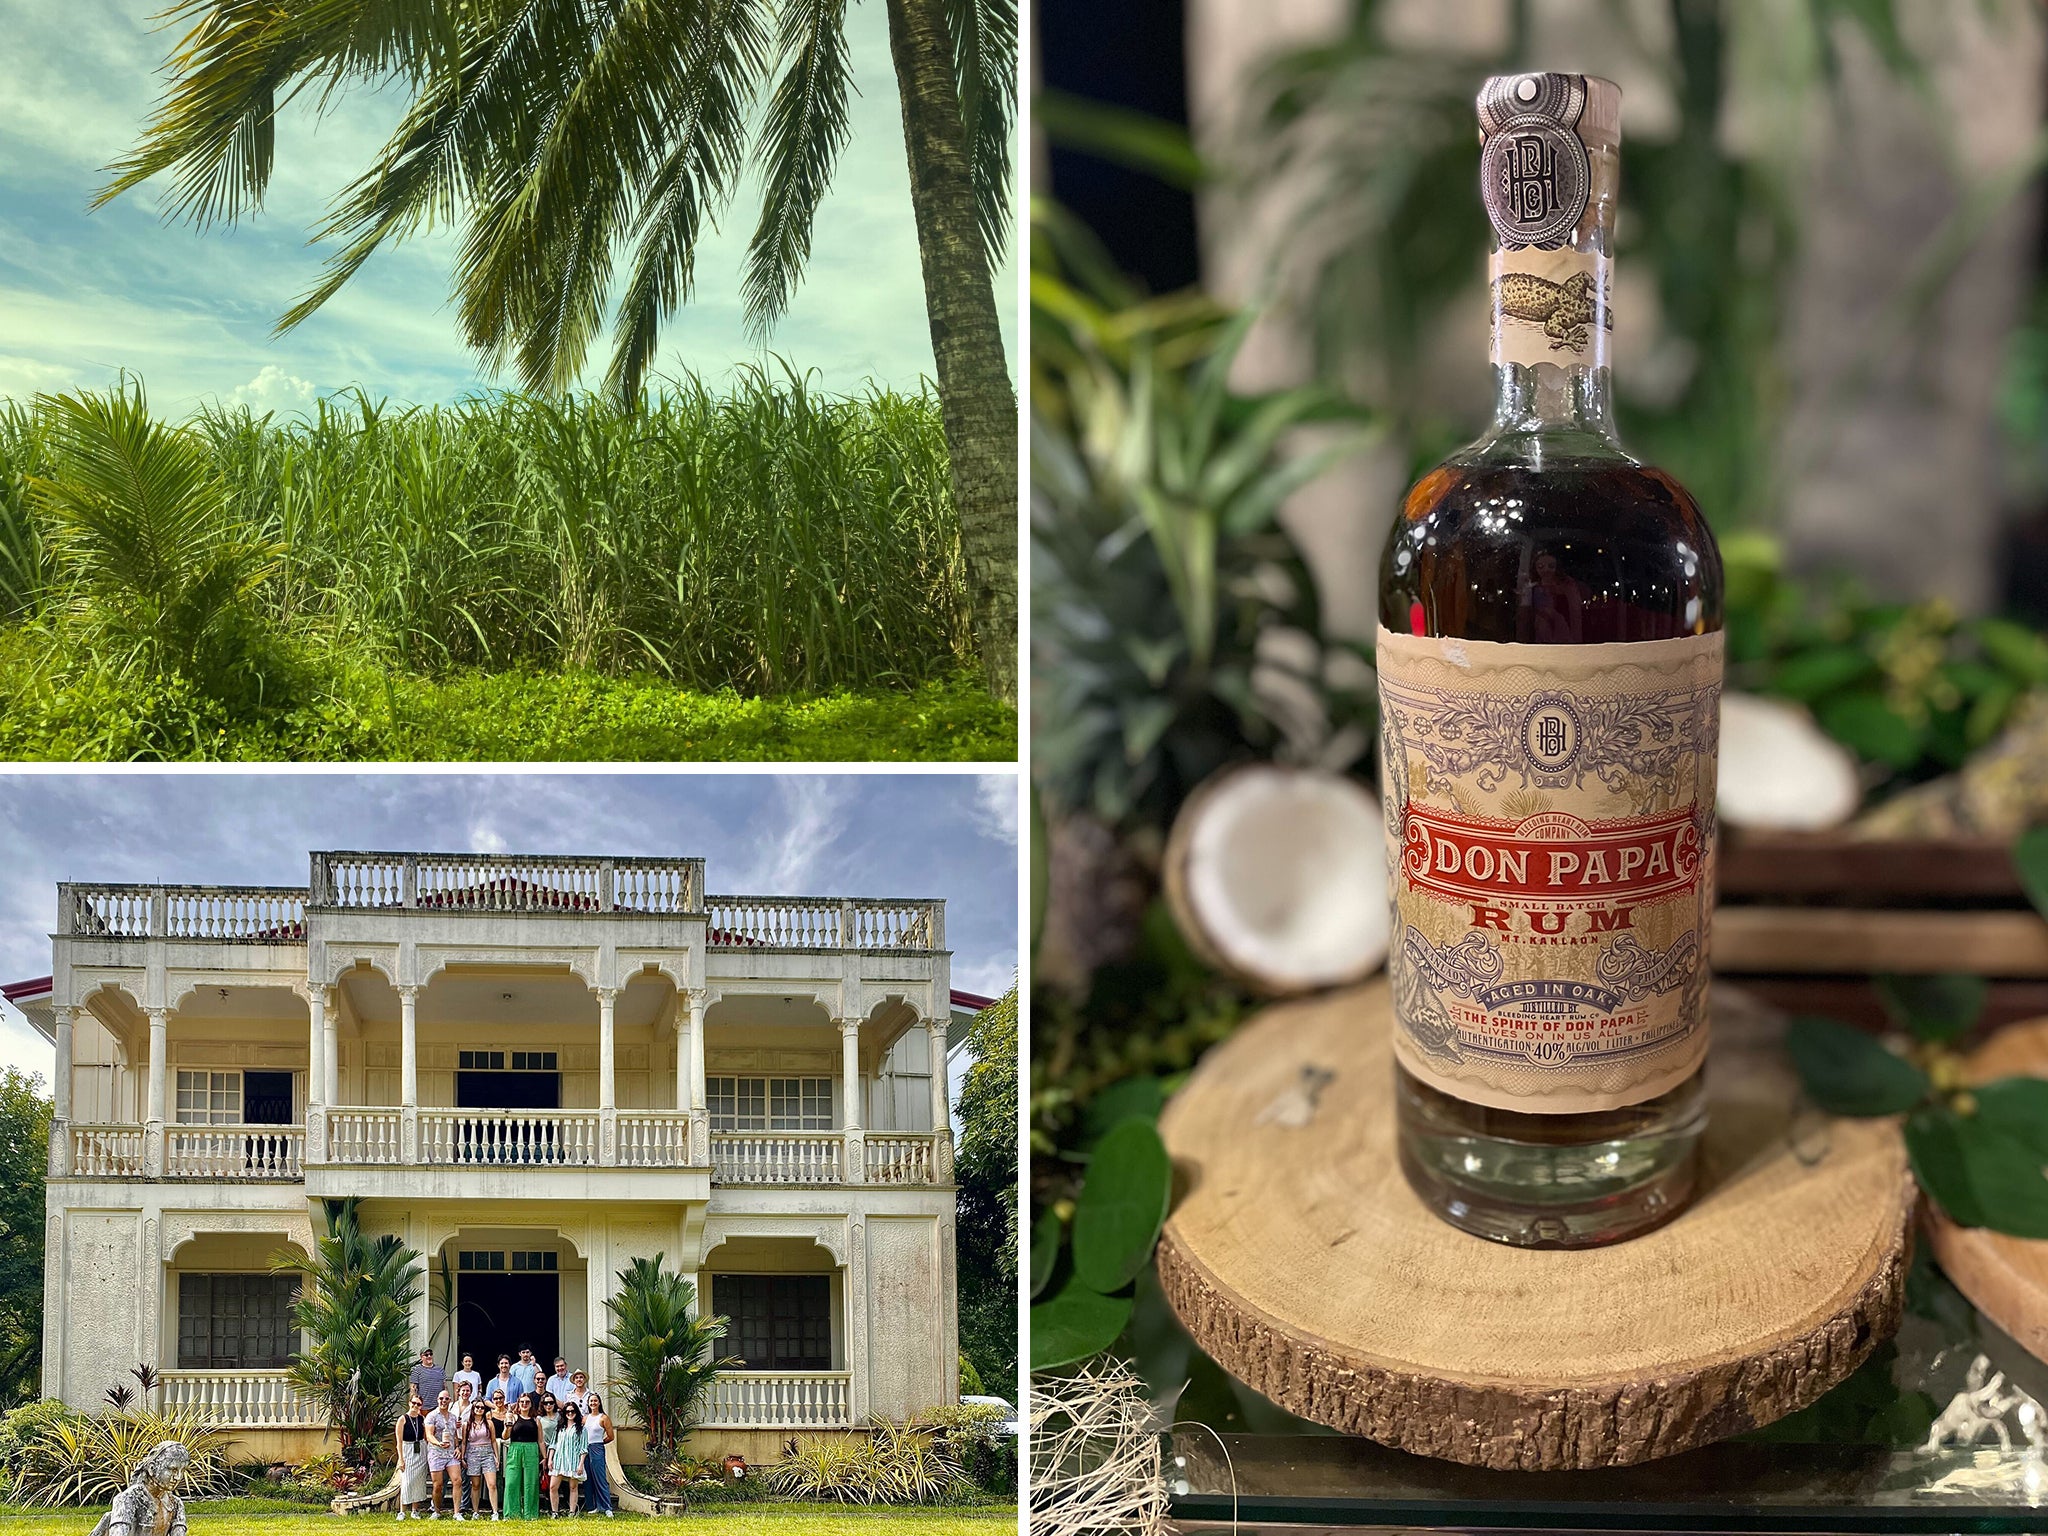 Diageo to acquire Don Papa Rum, a super-premium, dark rum from the  Philippines